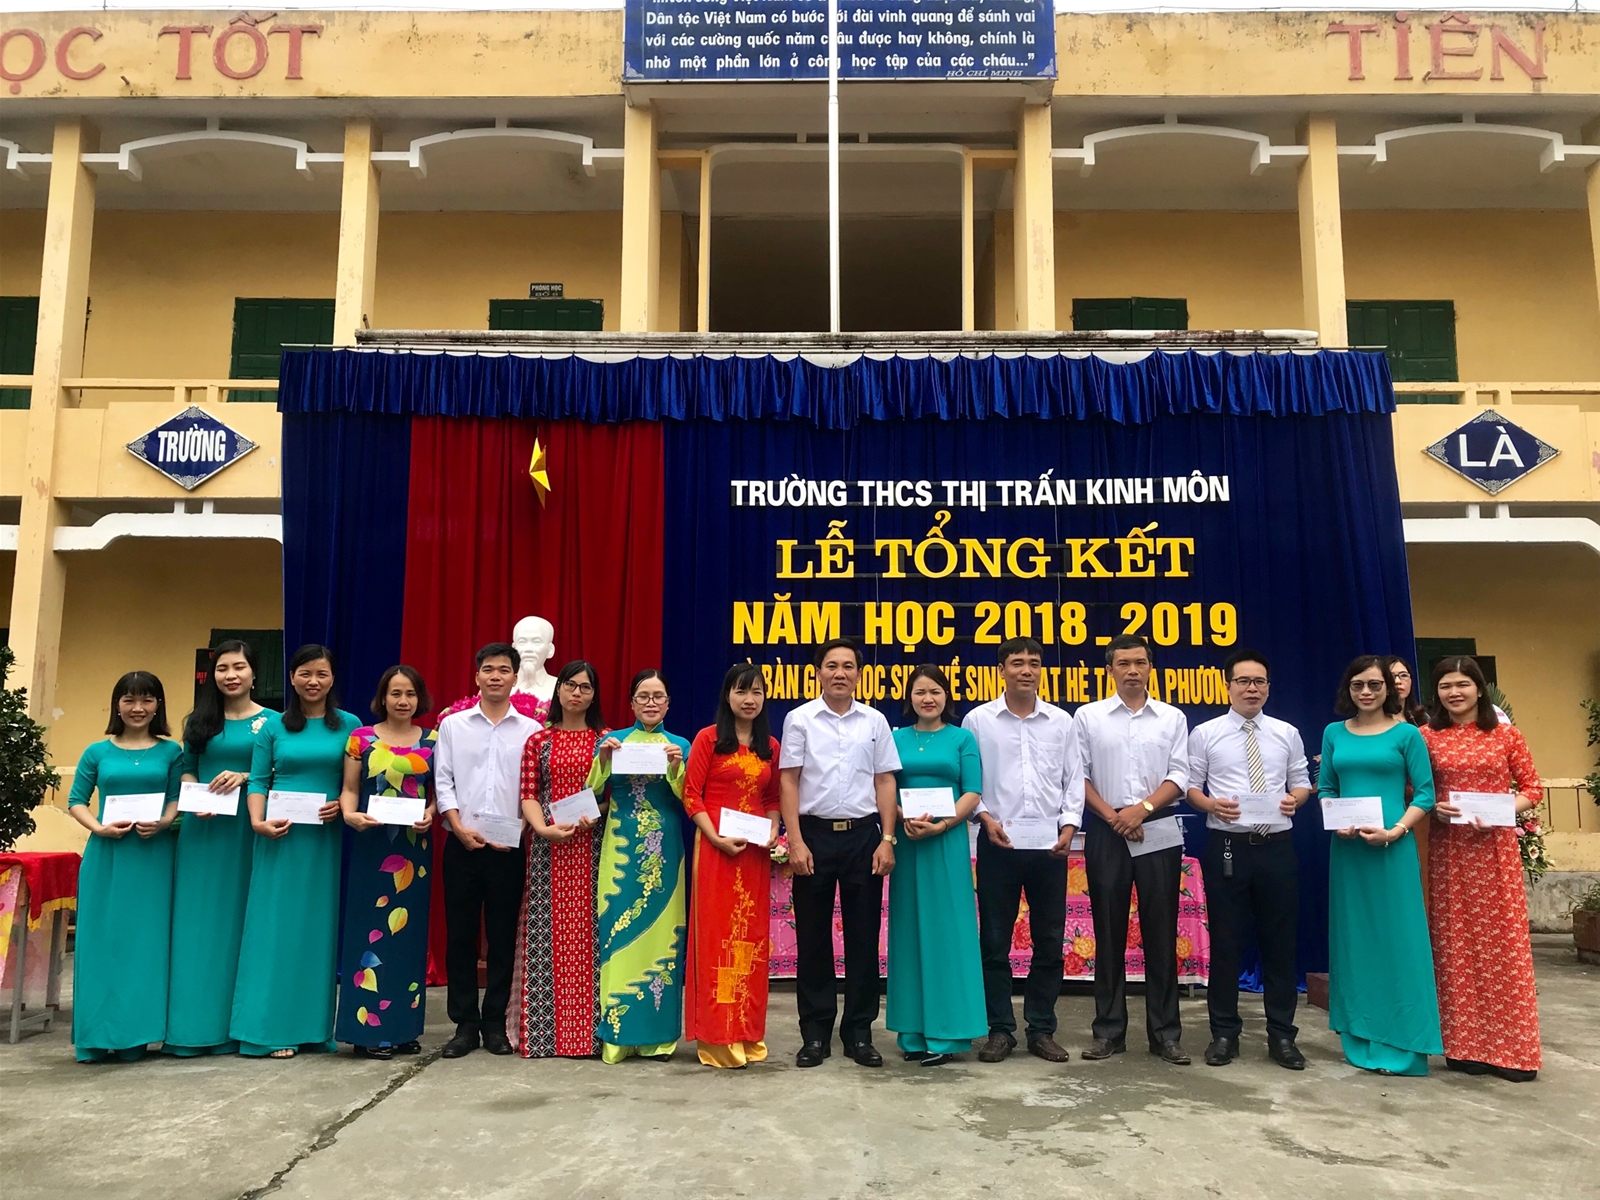 Ông Mạc VĂn Khiêm - PCTUBNN thị trấn Kinh Môn phát thưởng cho các đồng chí giáo viên đạt thành tích cao trong năm học